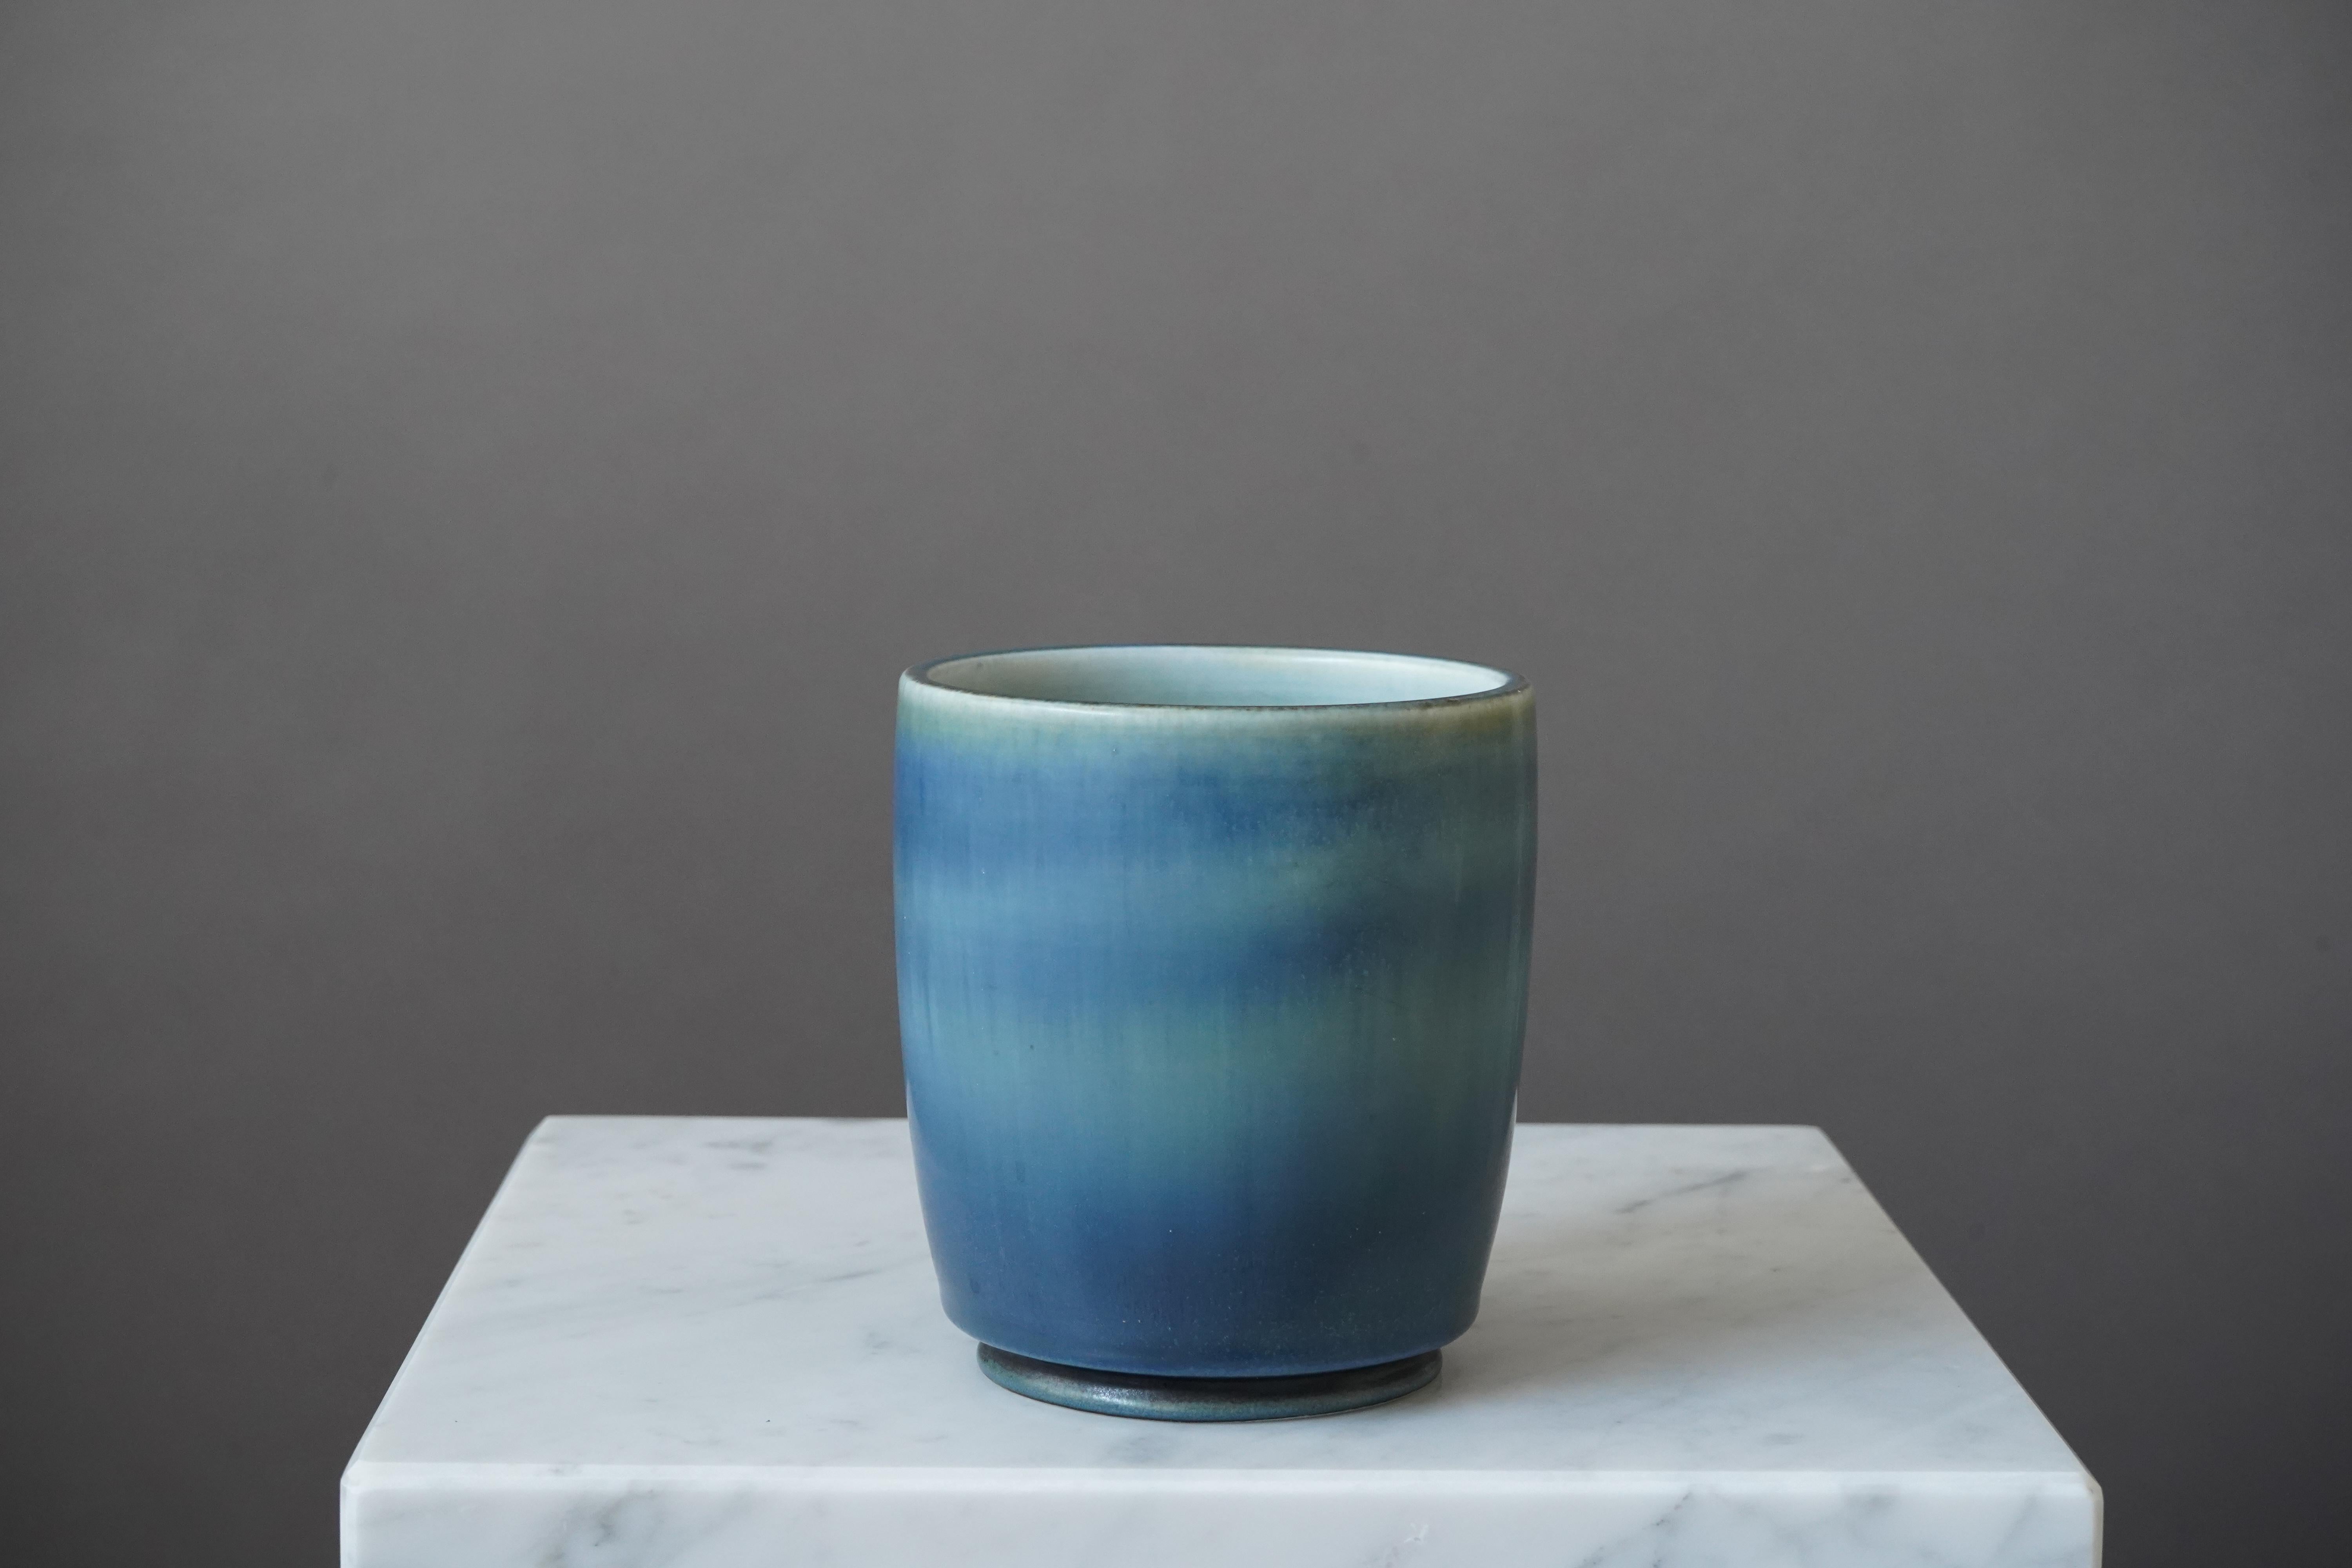 Schöne und seltene Vase aus Steingut, entworfen von Gertrud Lönegren.
Dieses Studio-Stück wurde zwischen 1936-41 in Rorstrand in Schweden geschaffen.

Ausgezeichneter Zustand. Eingedrückt 'Rörstrand / Lönegren / SCHWEDEN / 276 L /